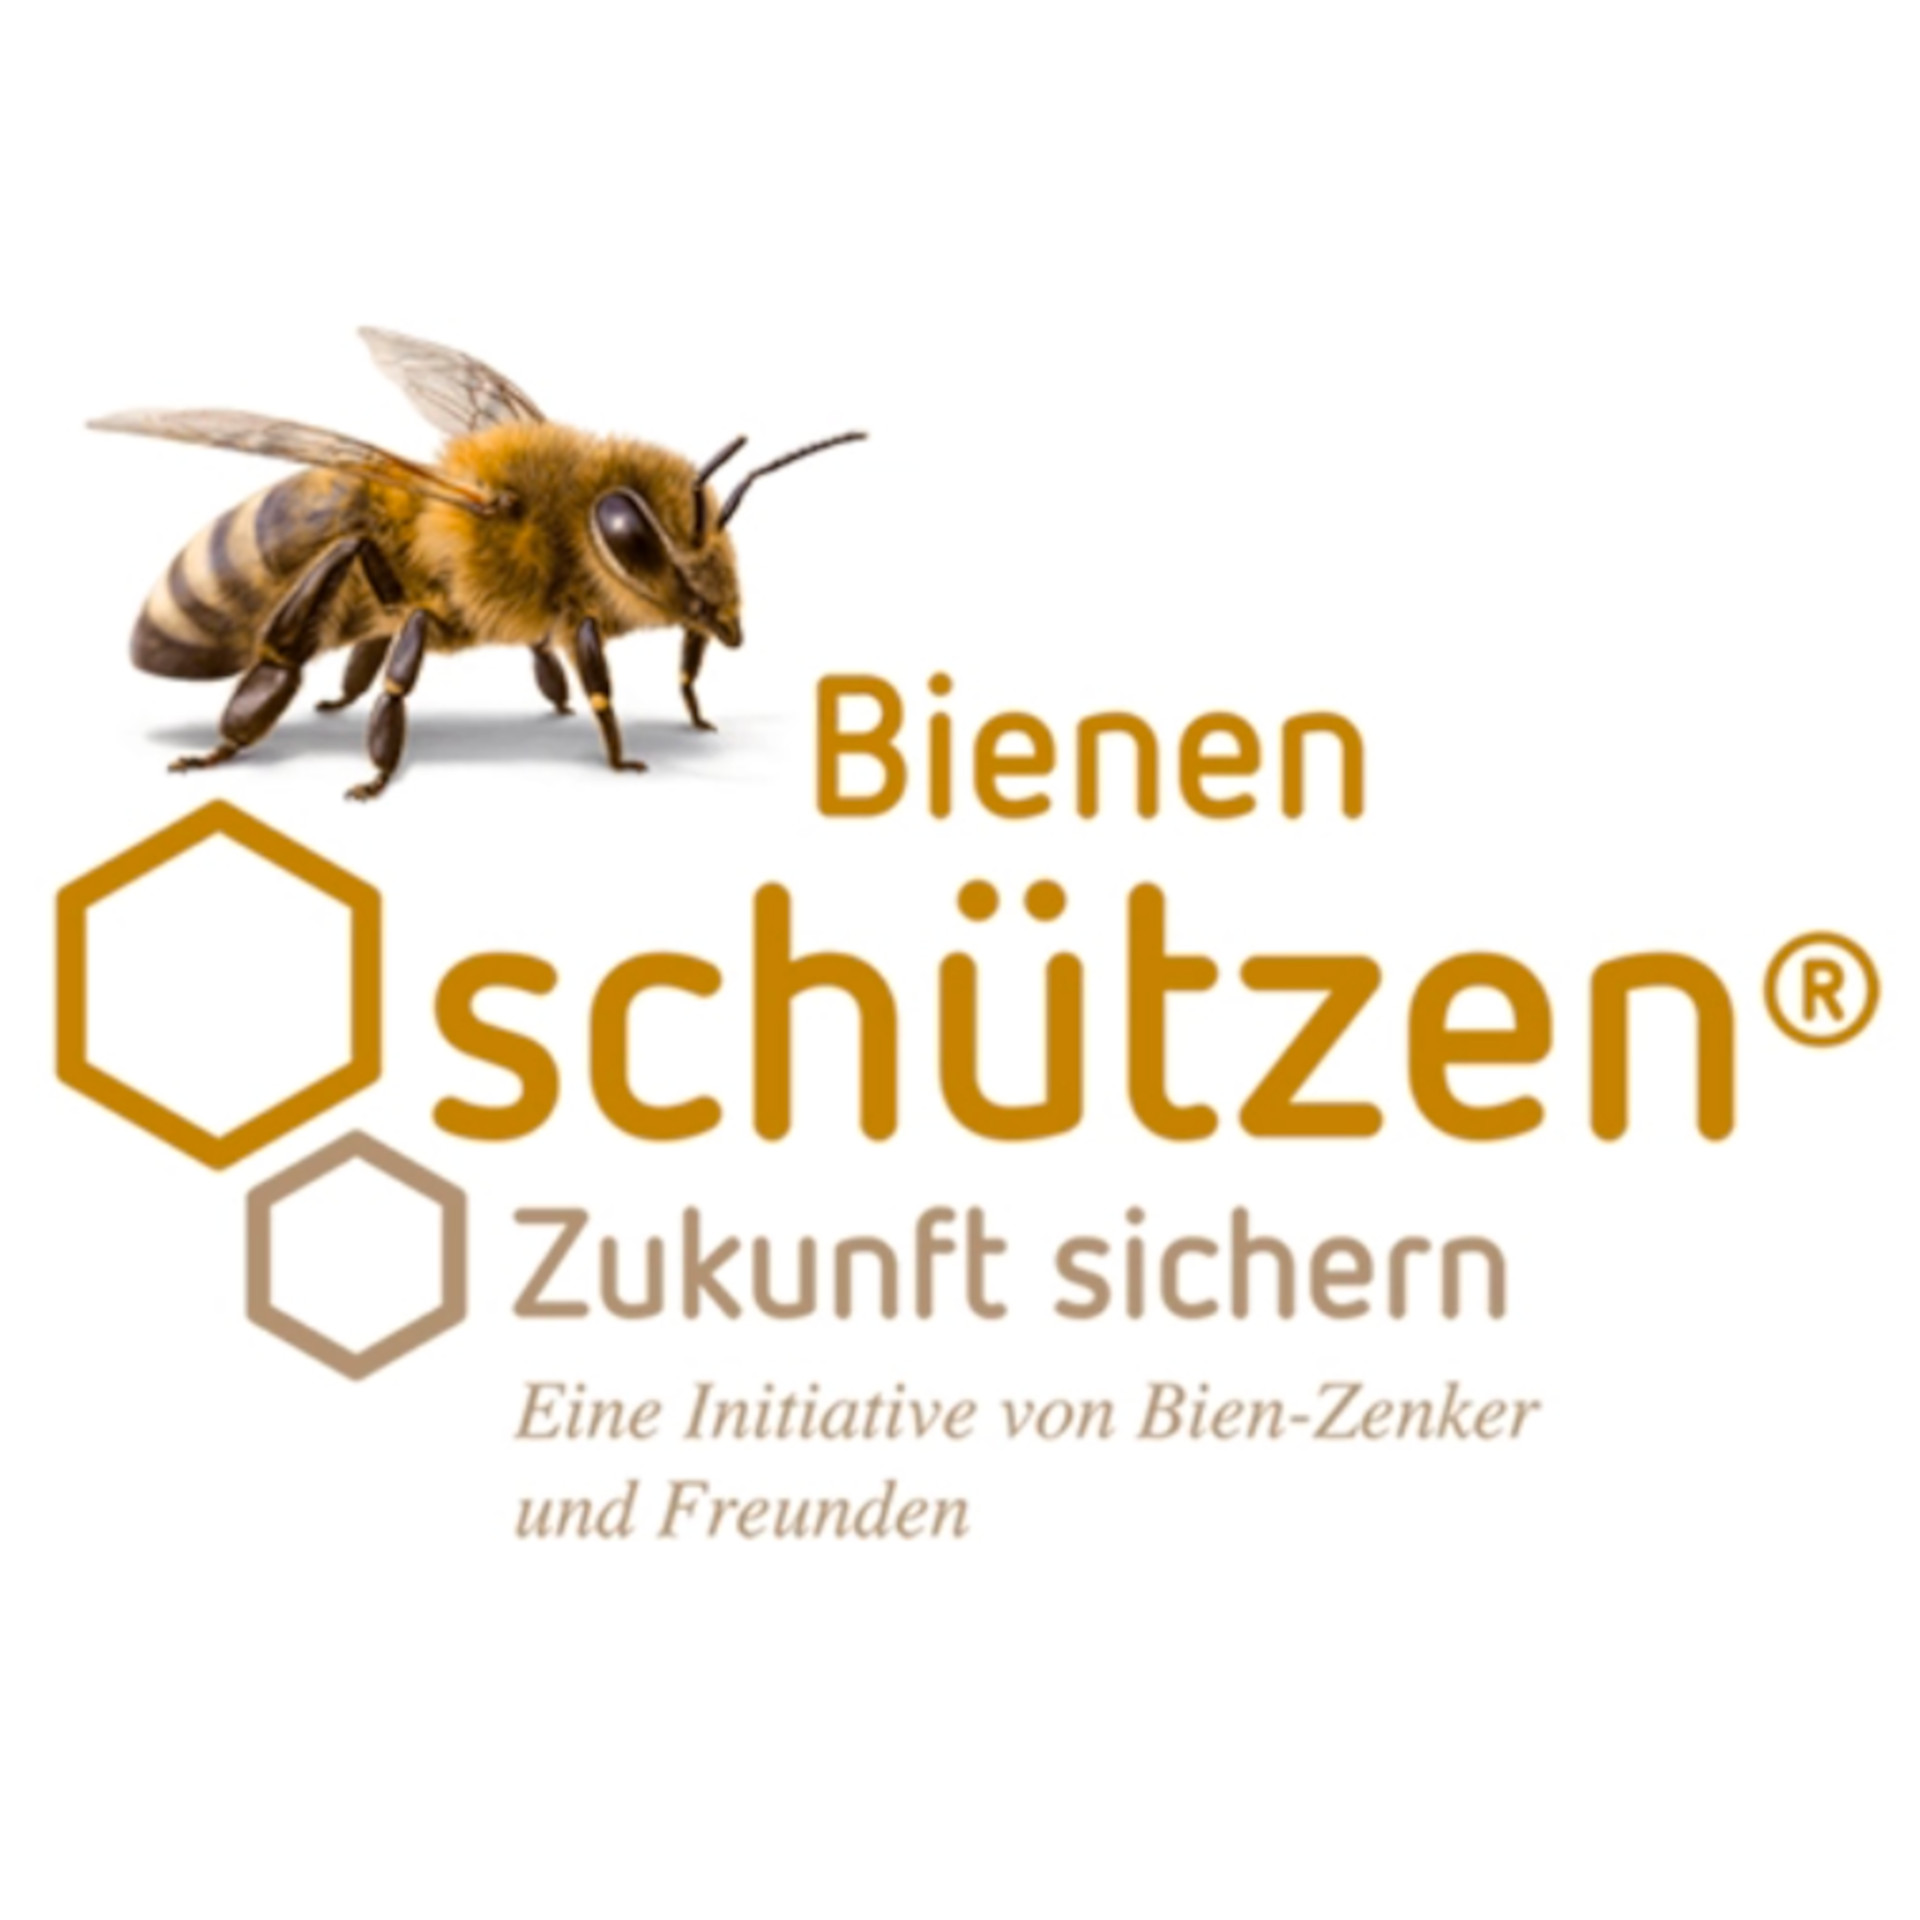 Welttag der Bienen – Bien-Zenker setzt sich für Artenvielfalt und Nachhaltigkeit ein